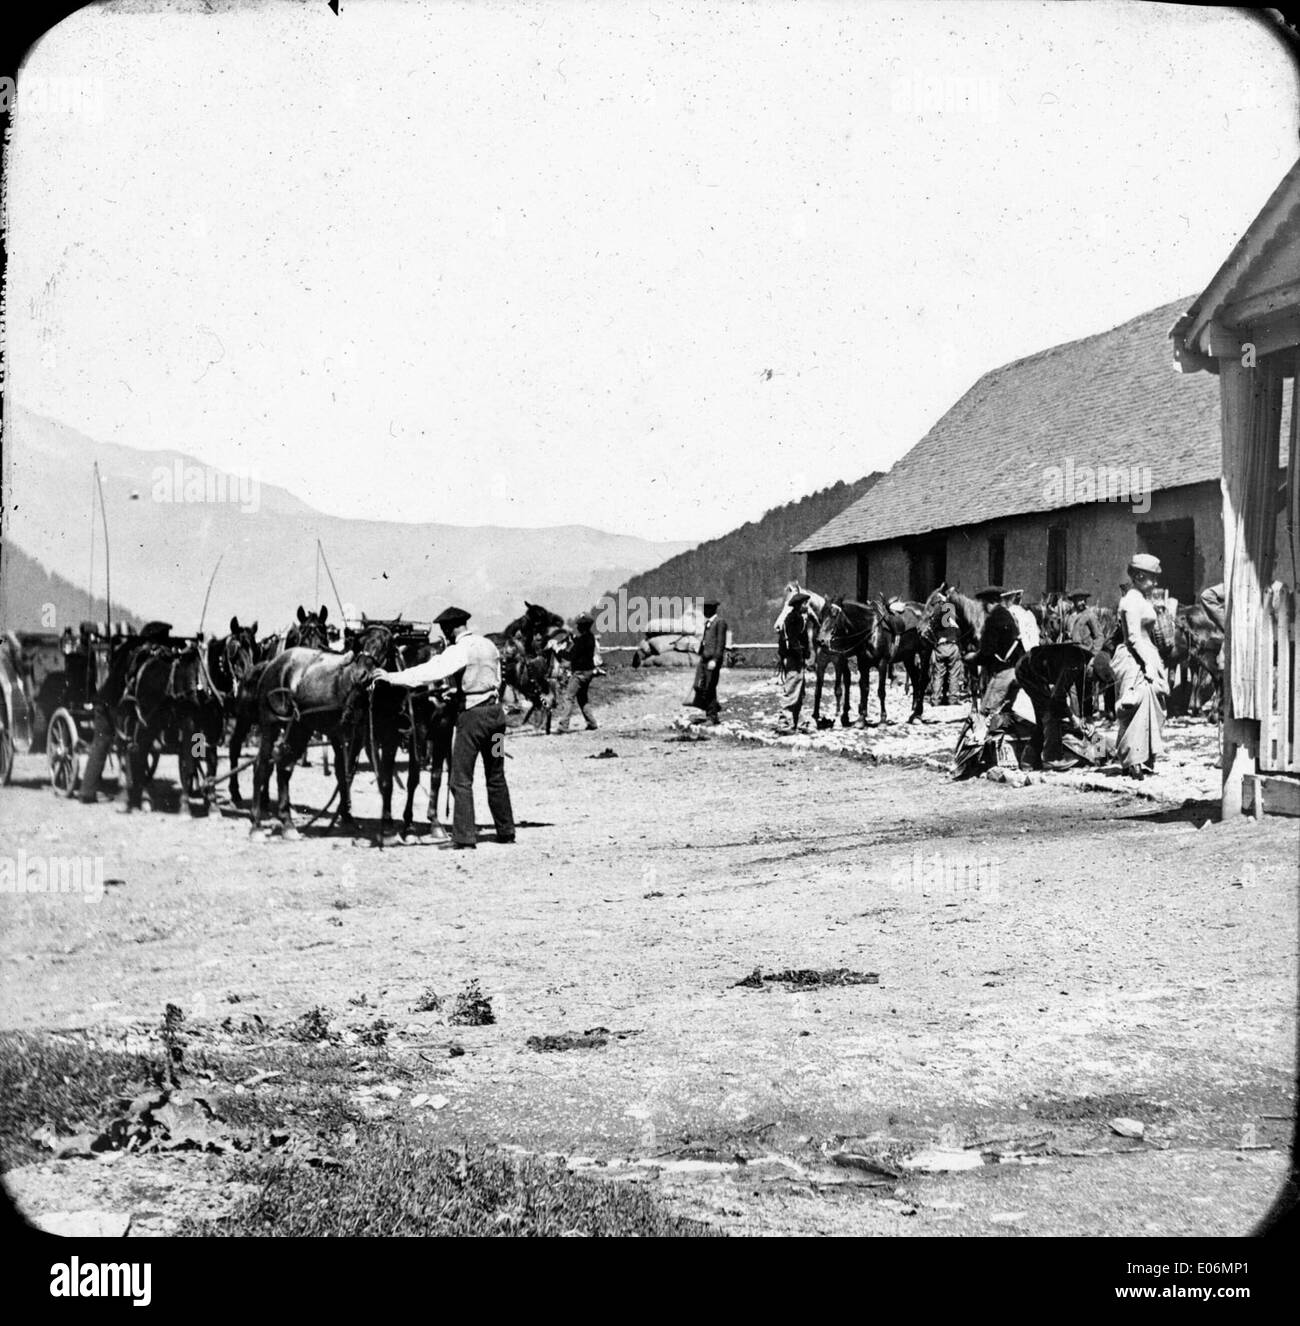 Arrivée à l'ospizio, Luchon, 12 août 1892 Foto Stock